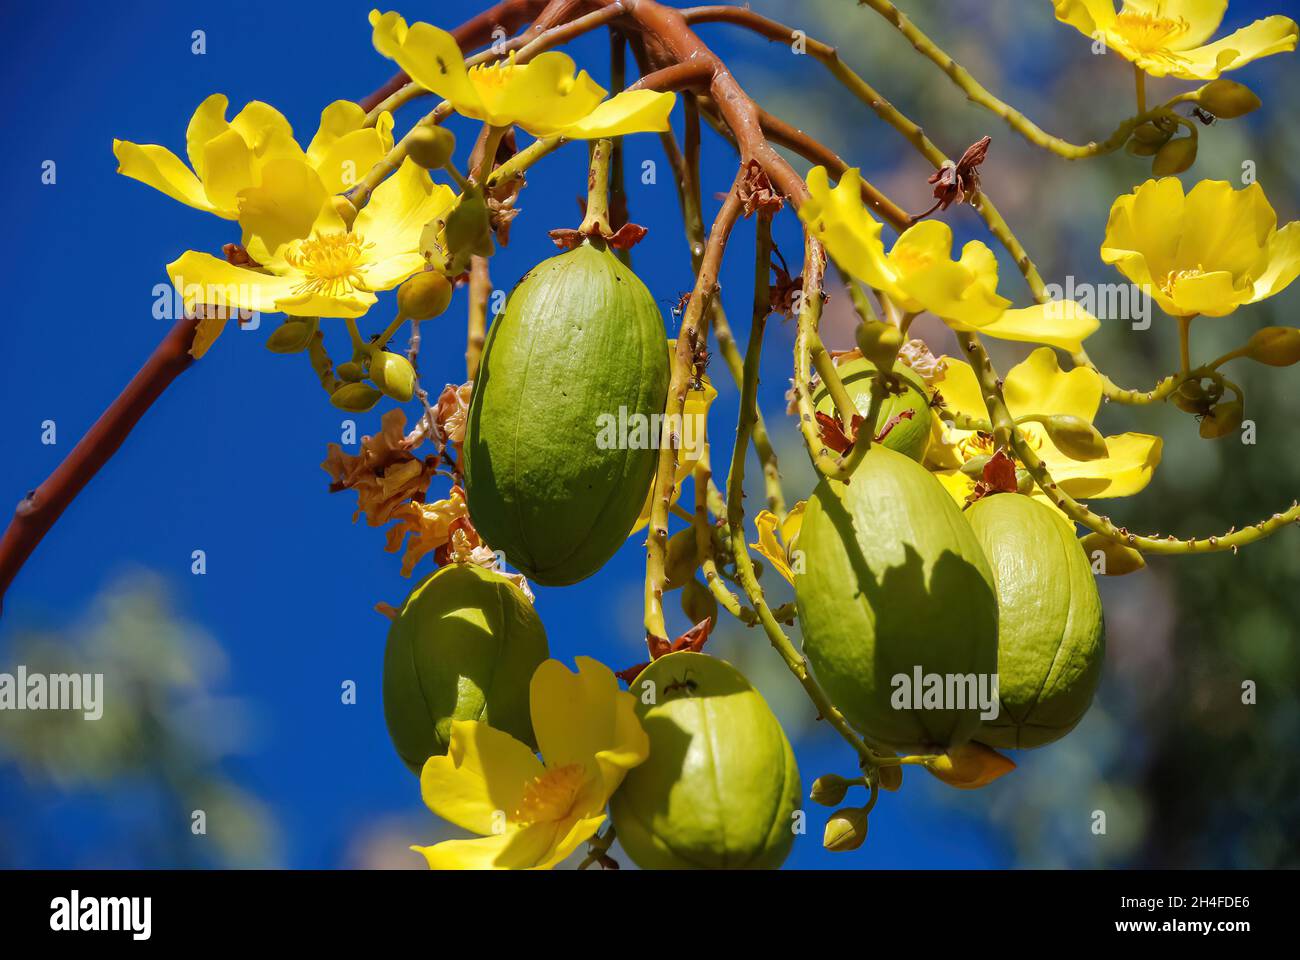 Nahaufnahme der gelben Blüten des Cochlospermum- oder Butterblume- oder Seidenbaumwollbaums in voller Blüte mit einigen noch ungeöffneten Knospen Stockfoto